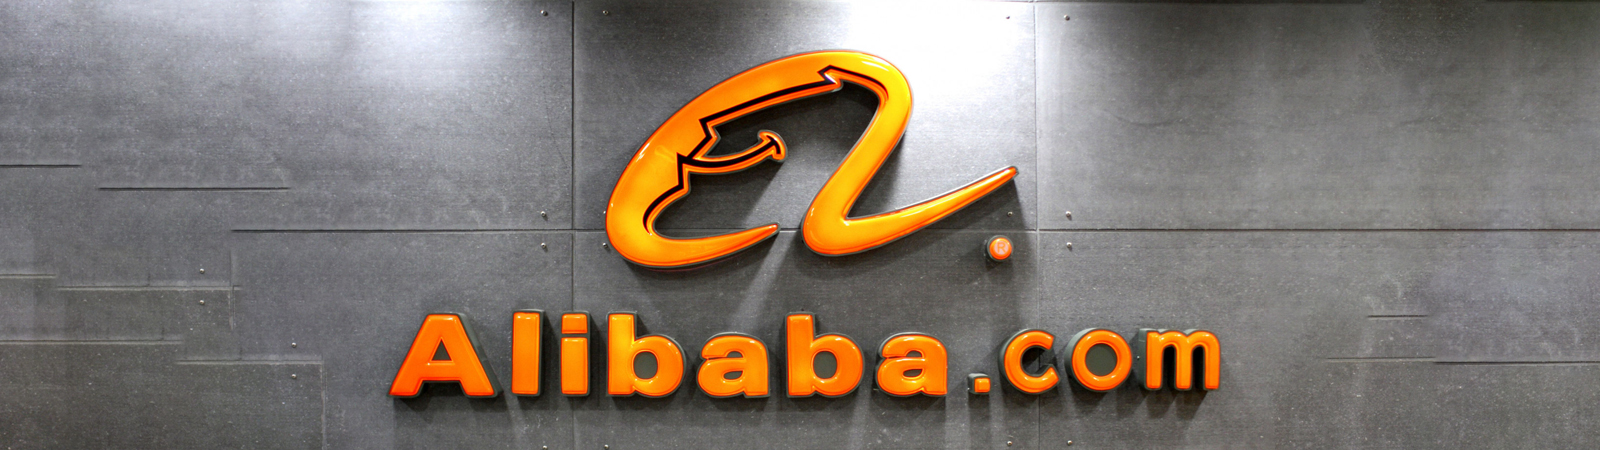 7. Alibaba